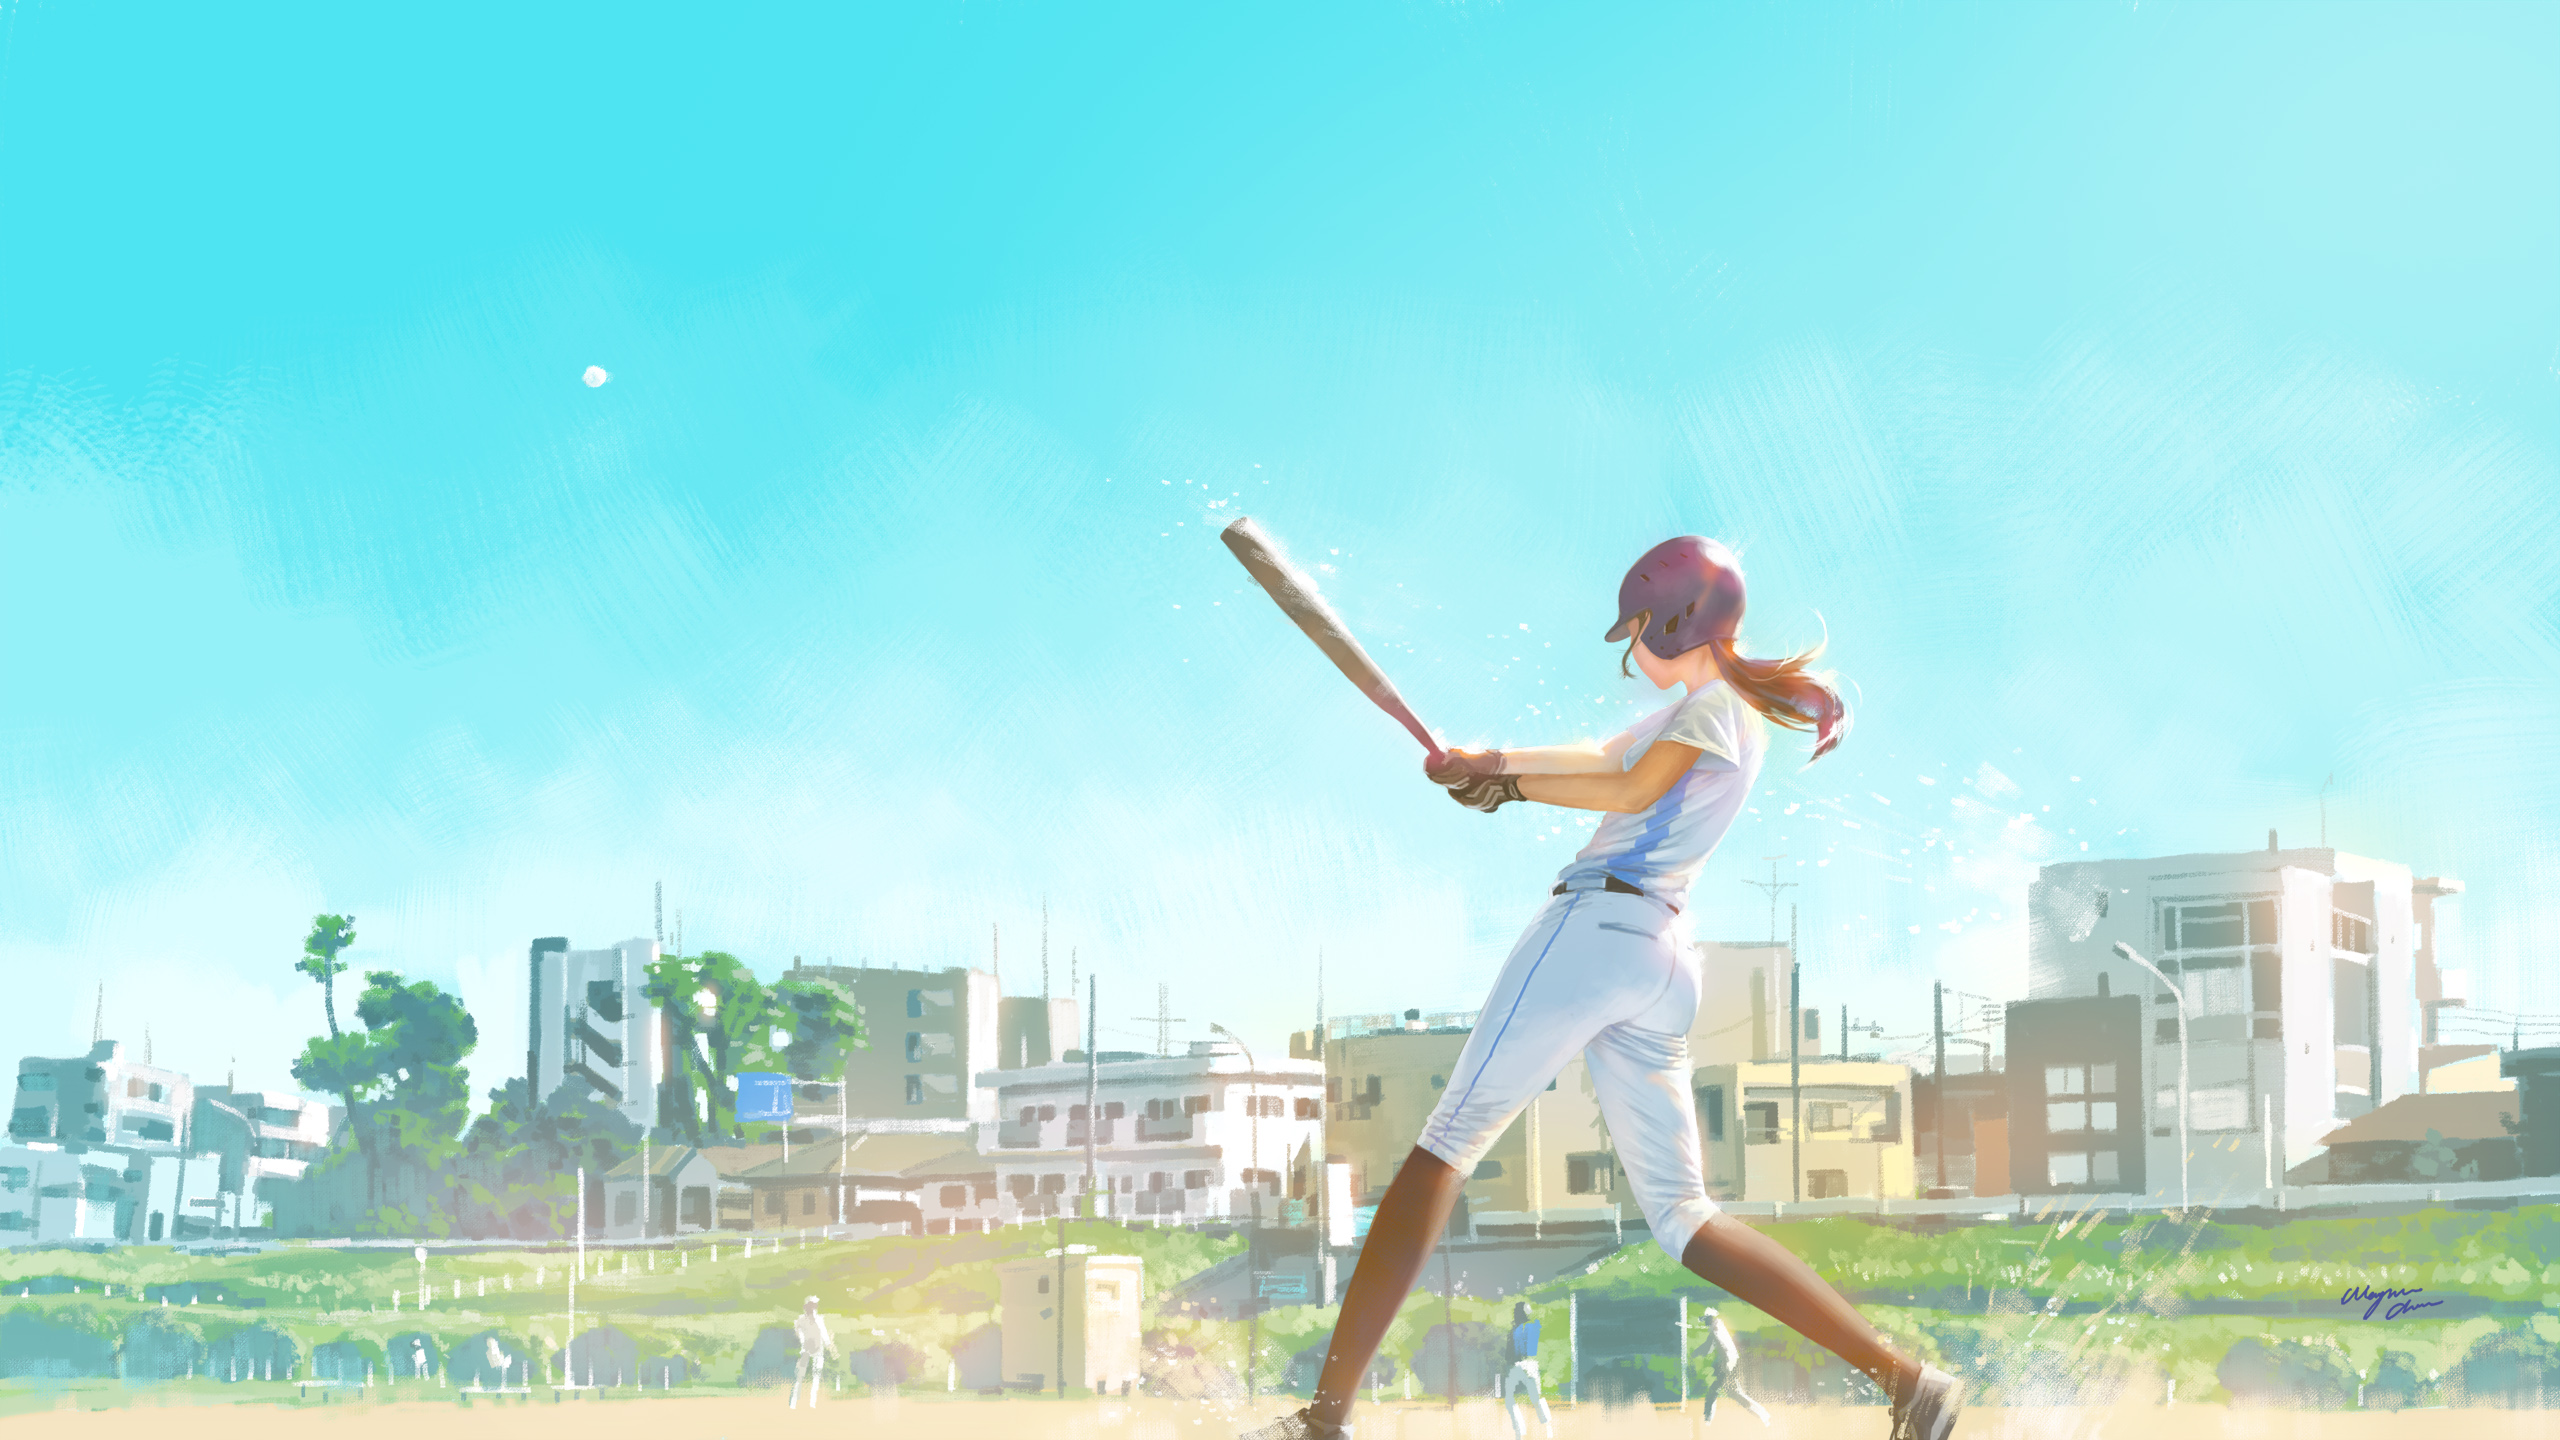 Anime 2560x1440 anime 2D digital art artwork city baseball